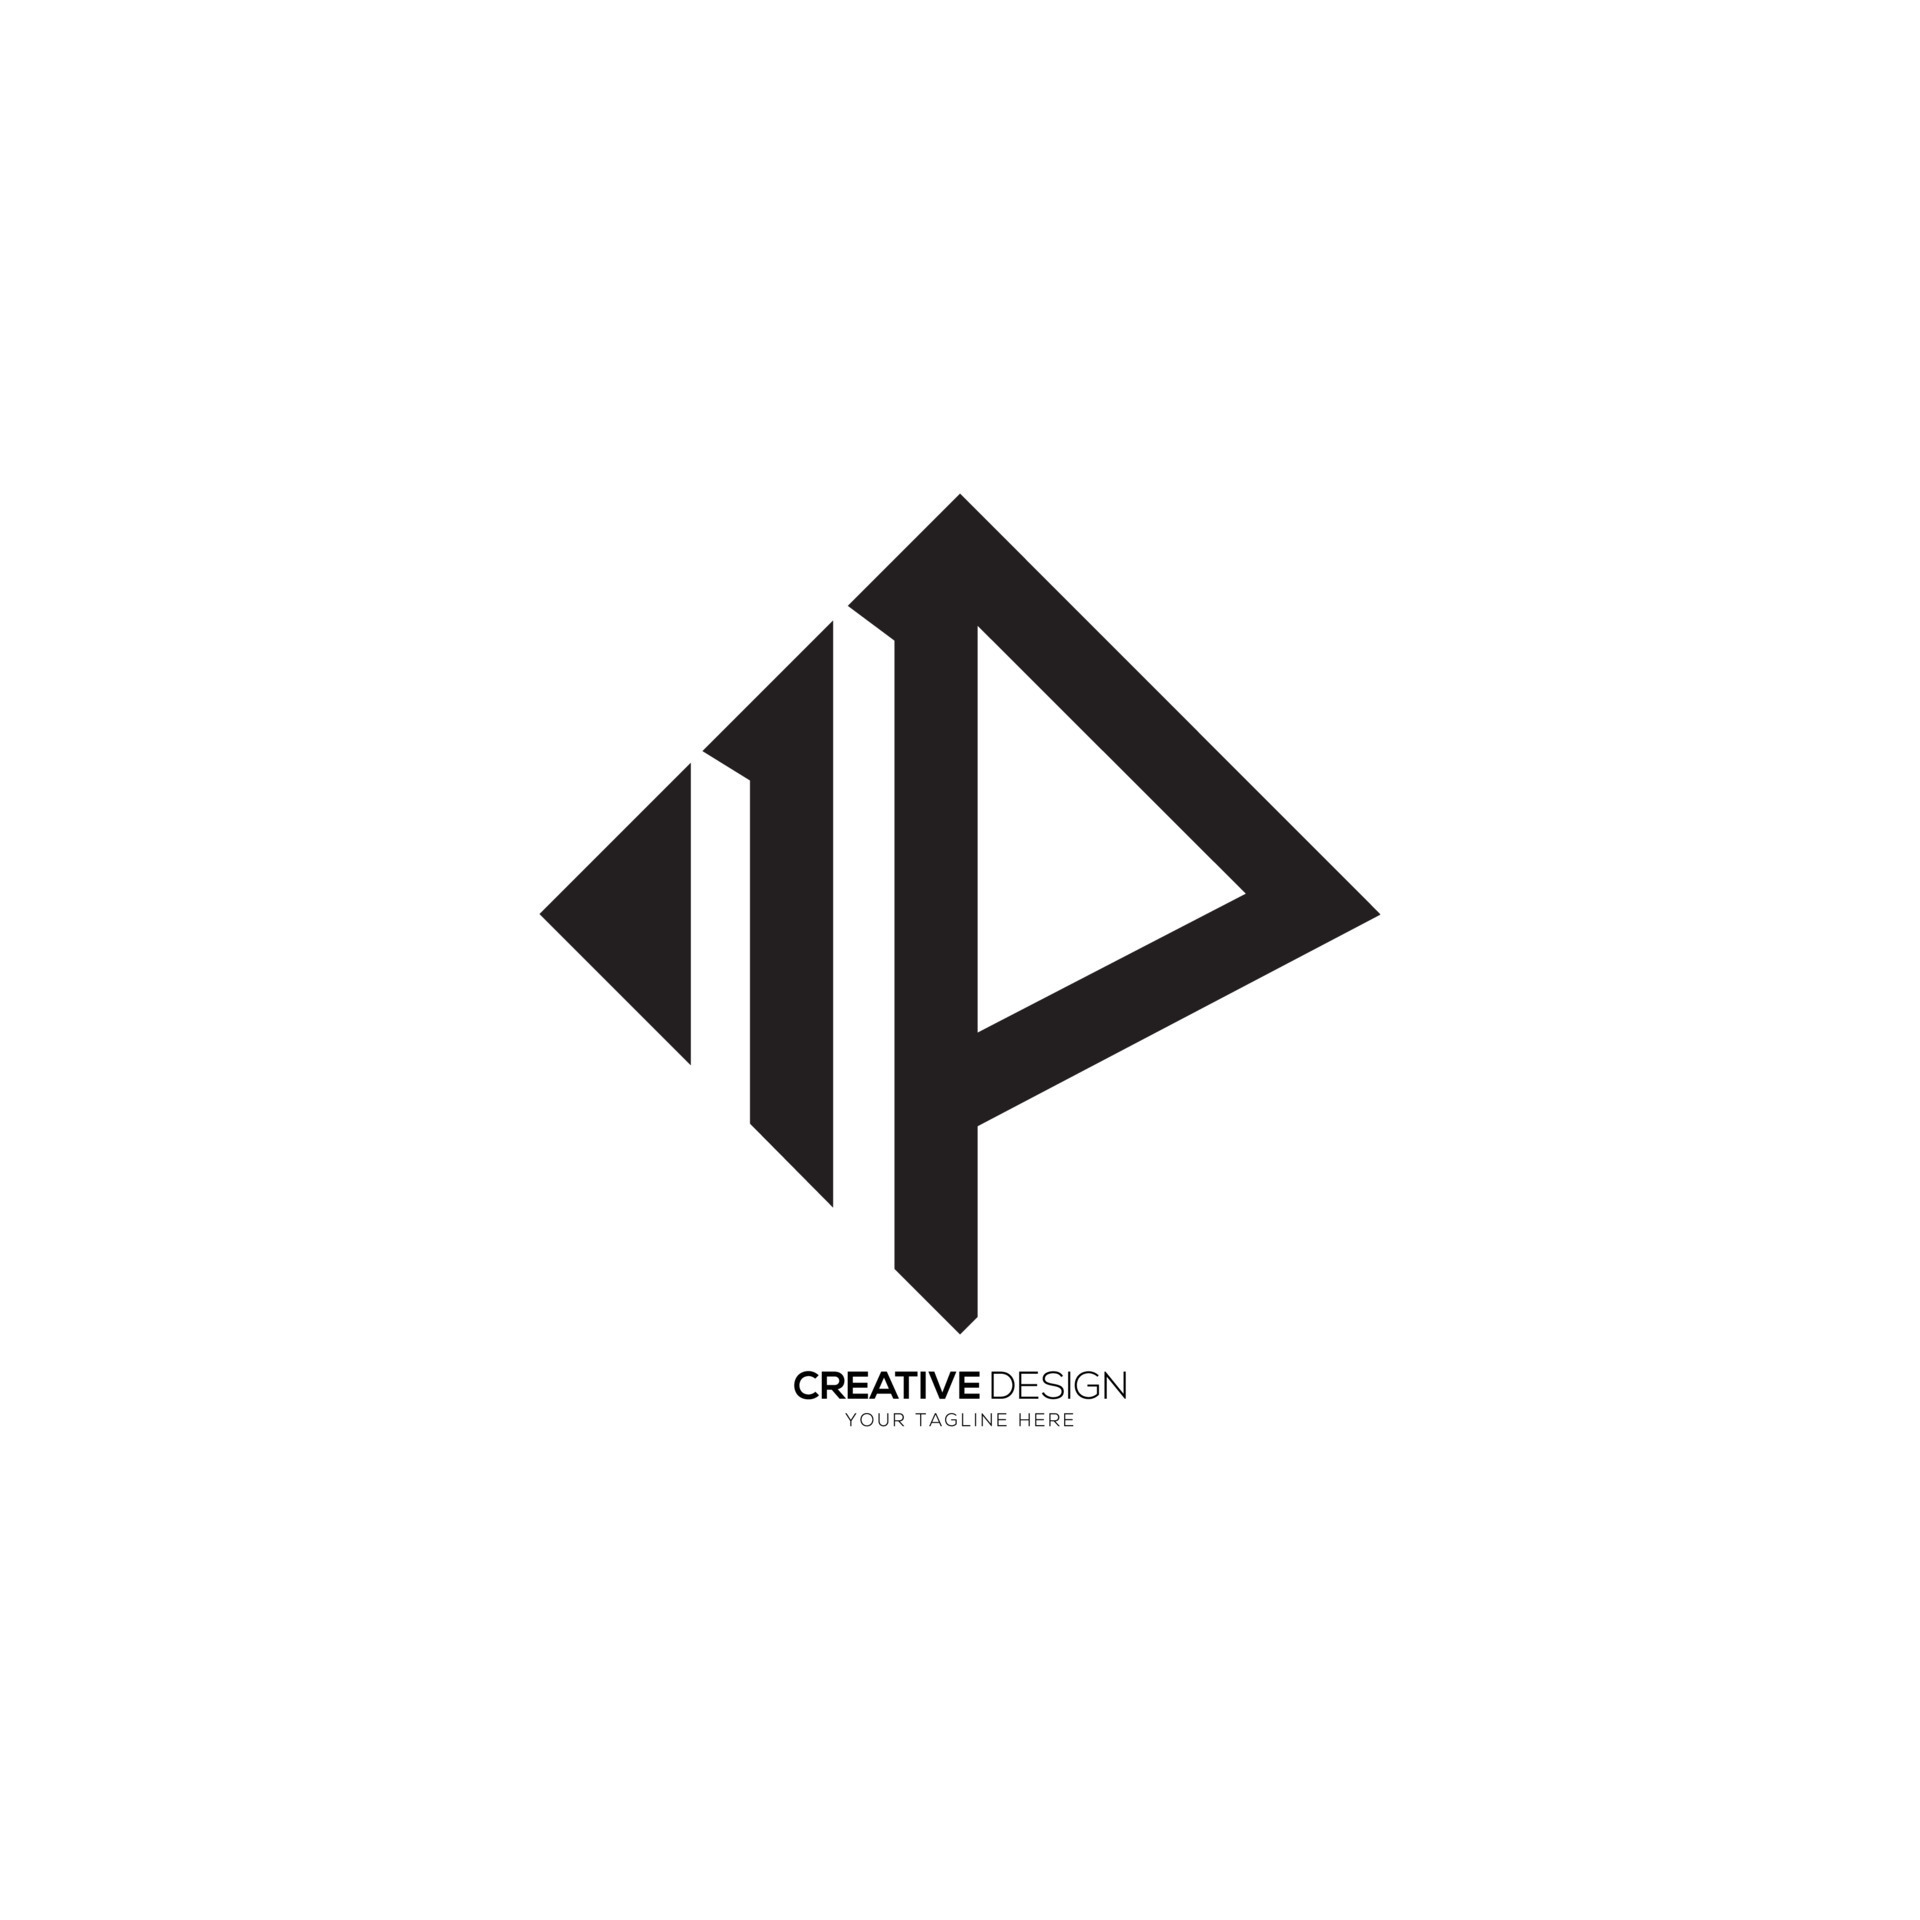 Premium Vector  Creative simple initial monogram pm logo designs